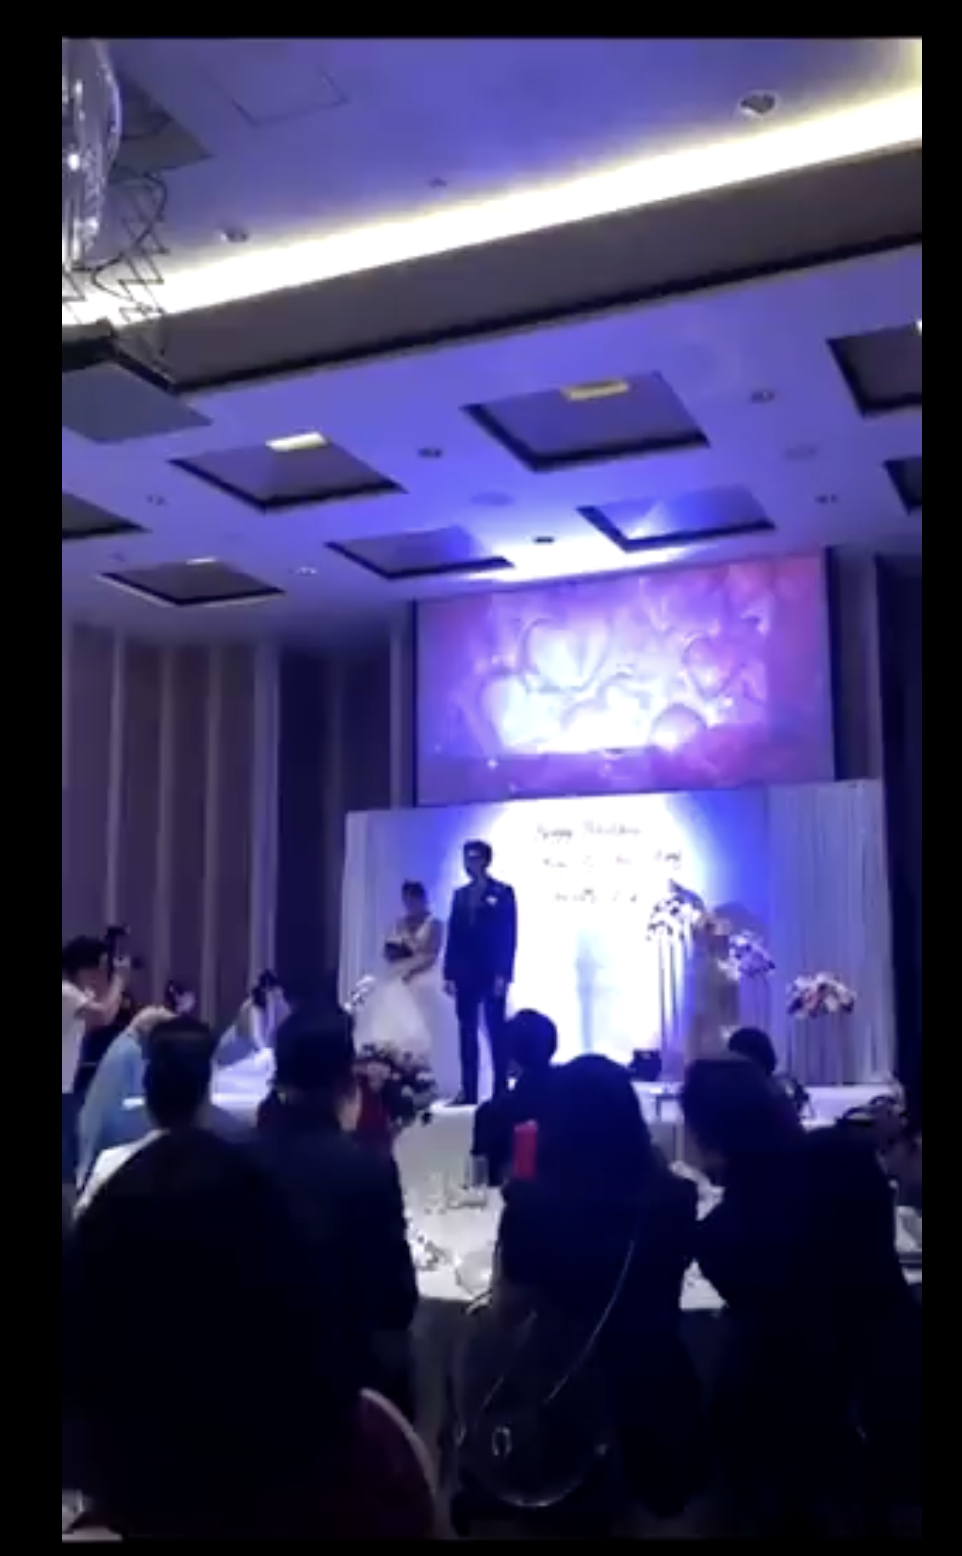 Los recién casados aparecen juntos en el escenario. | Foto: twitter.com/TuanConCom1